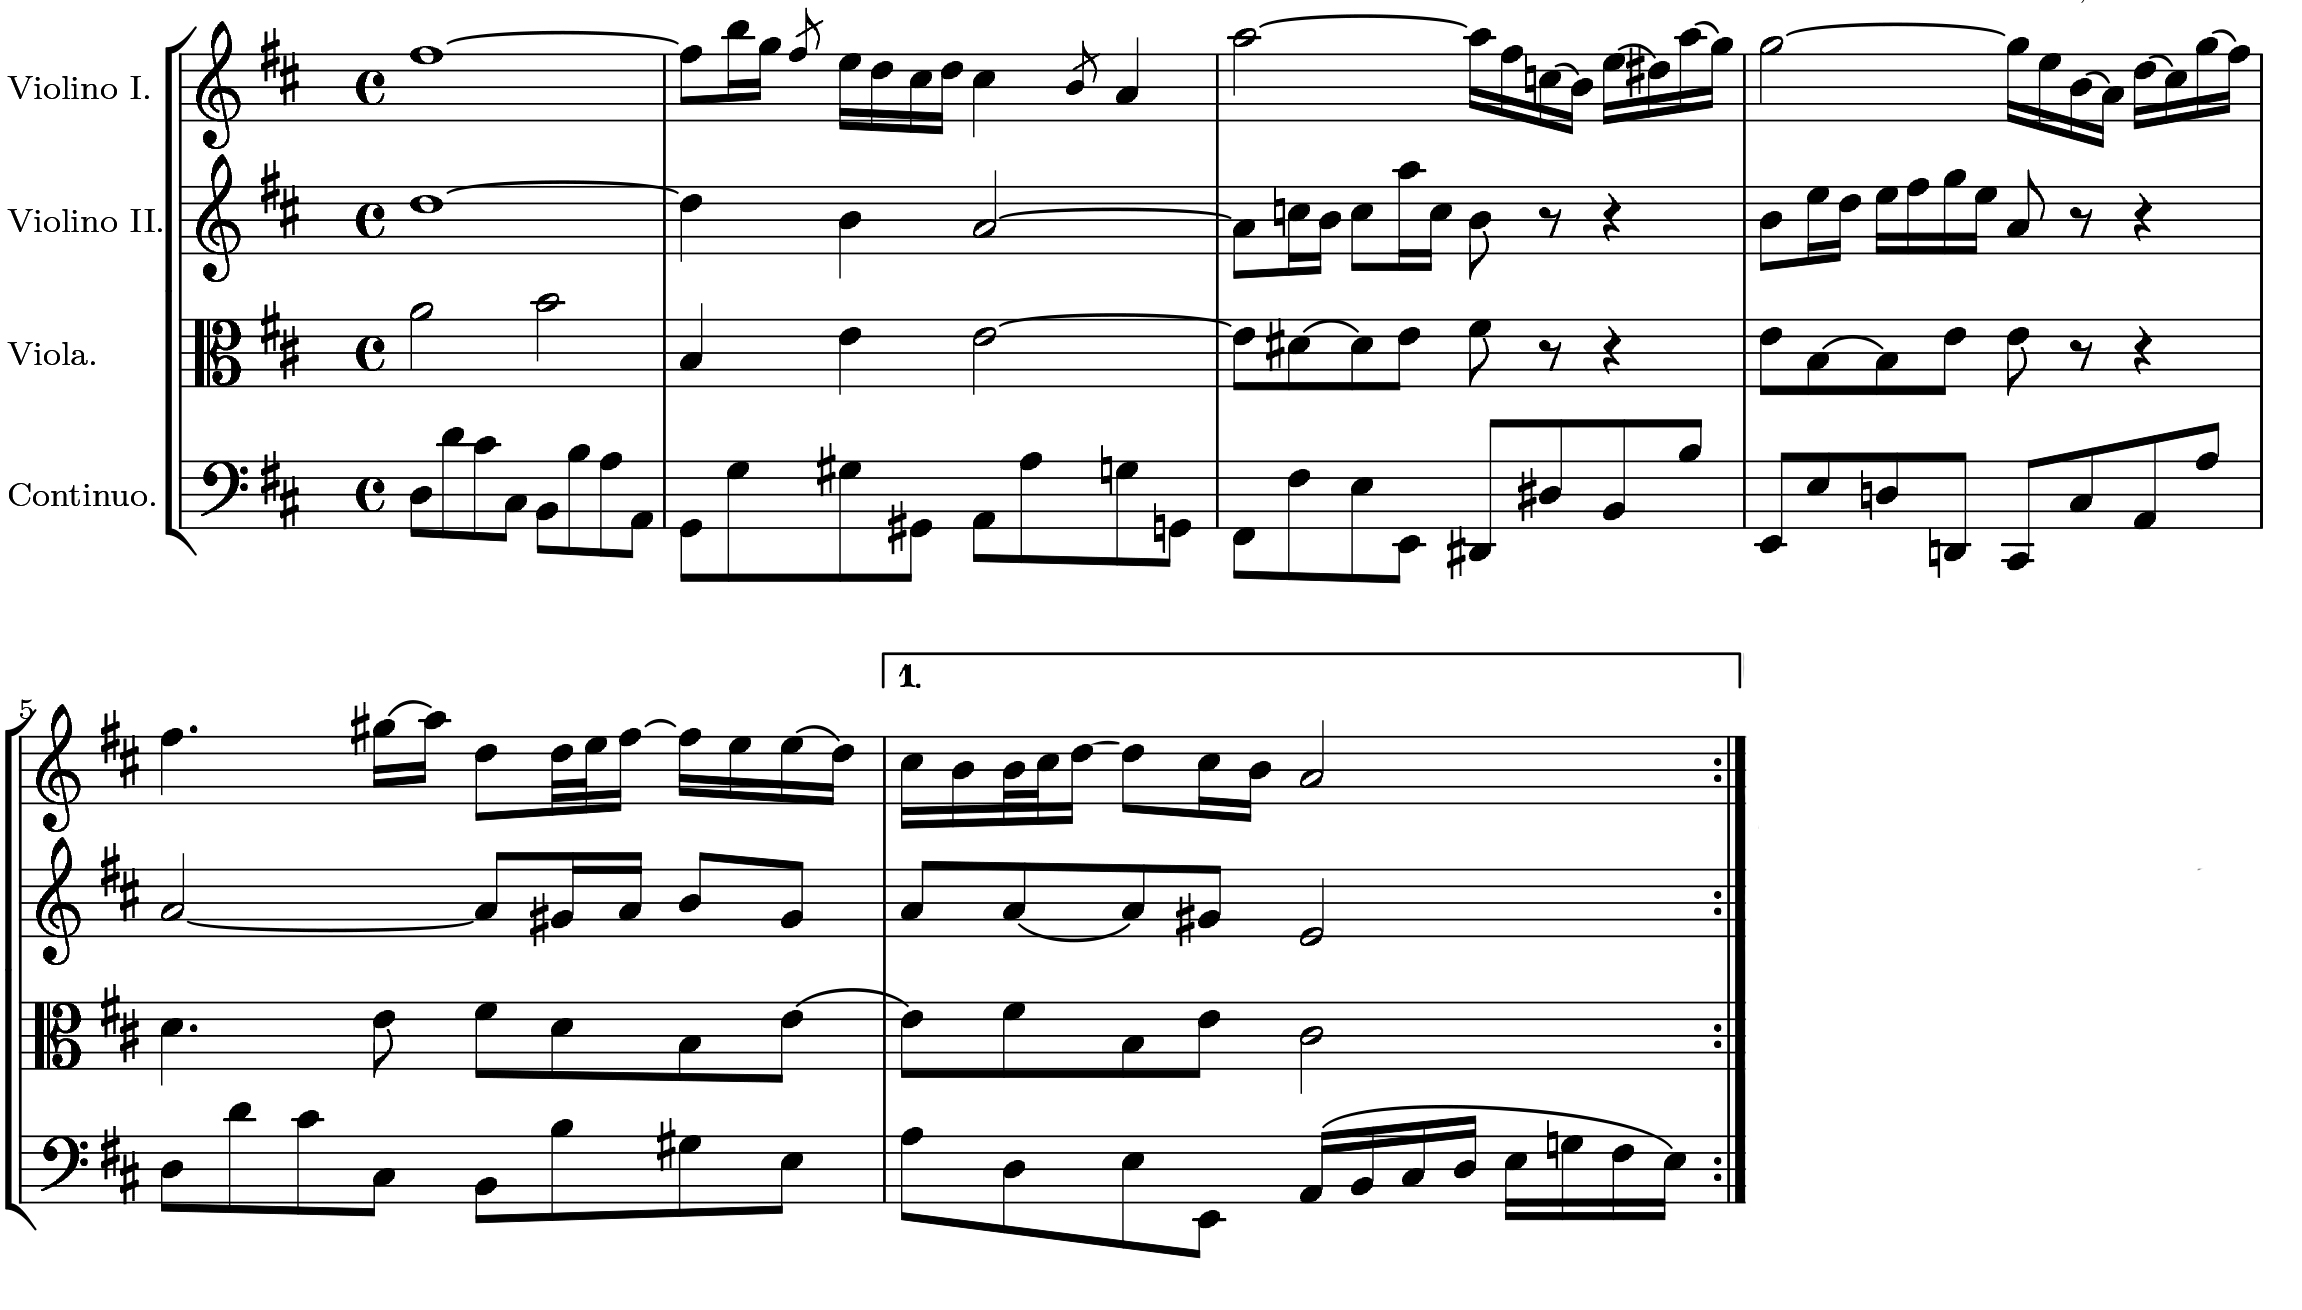 Johann Sebastian Bach: Thema der "Air" aus der Suite für Orchester BWV 1068